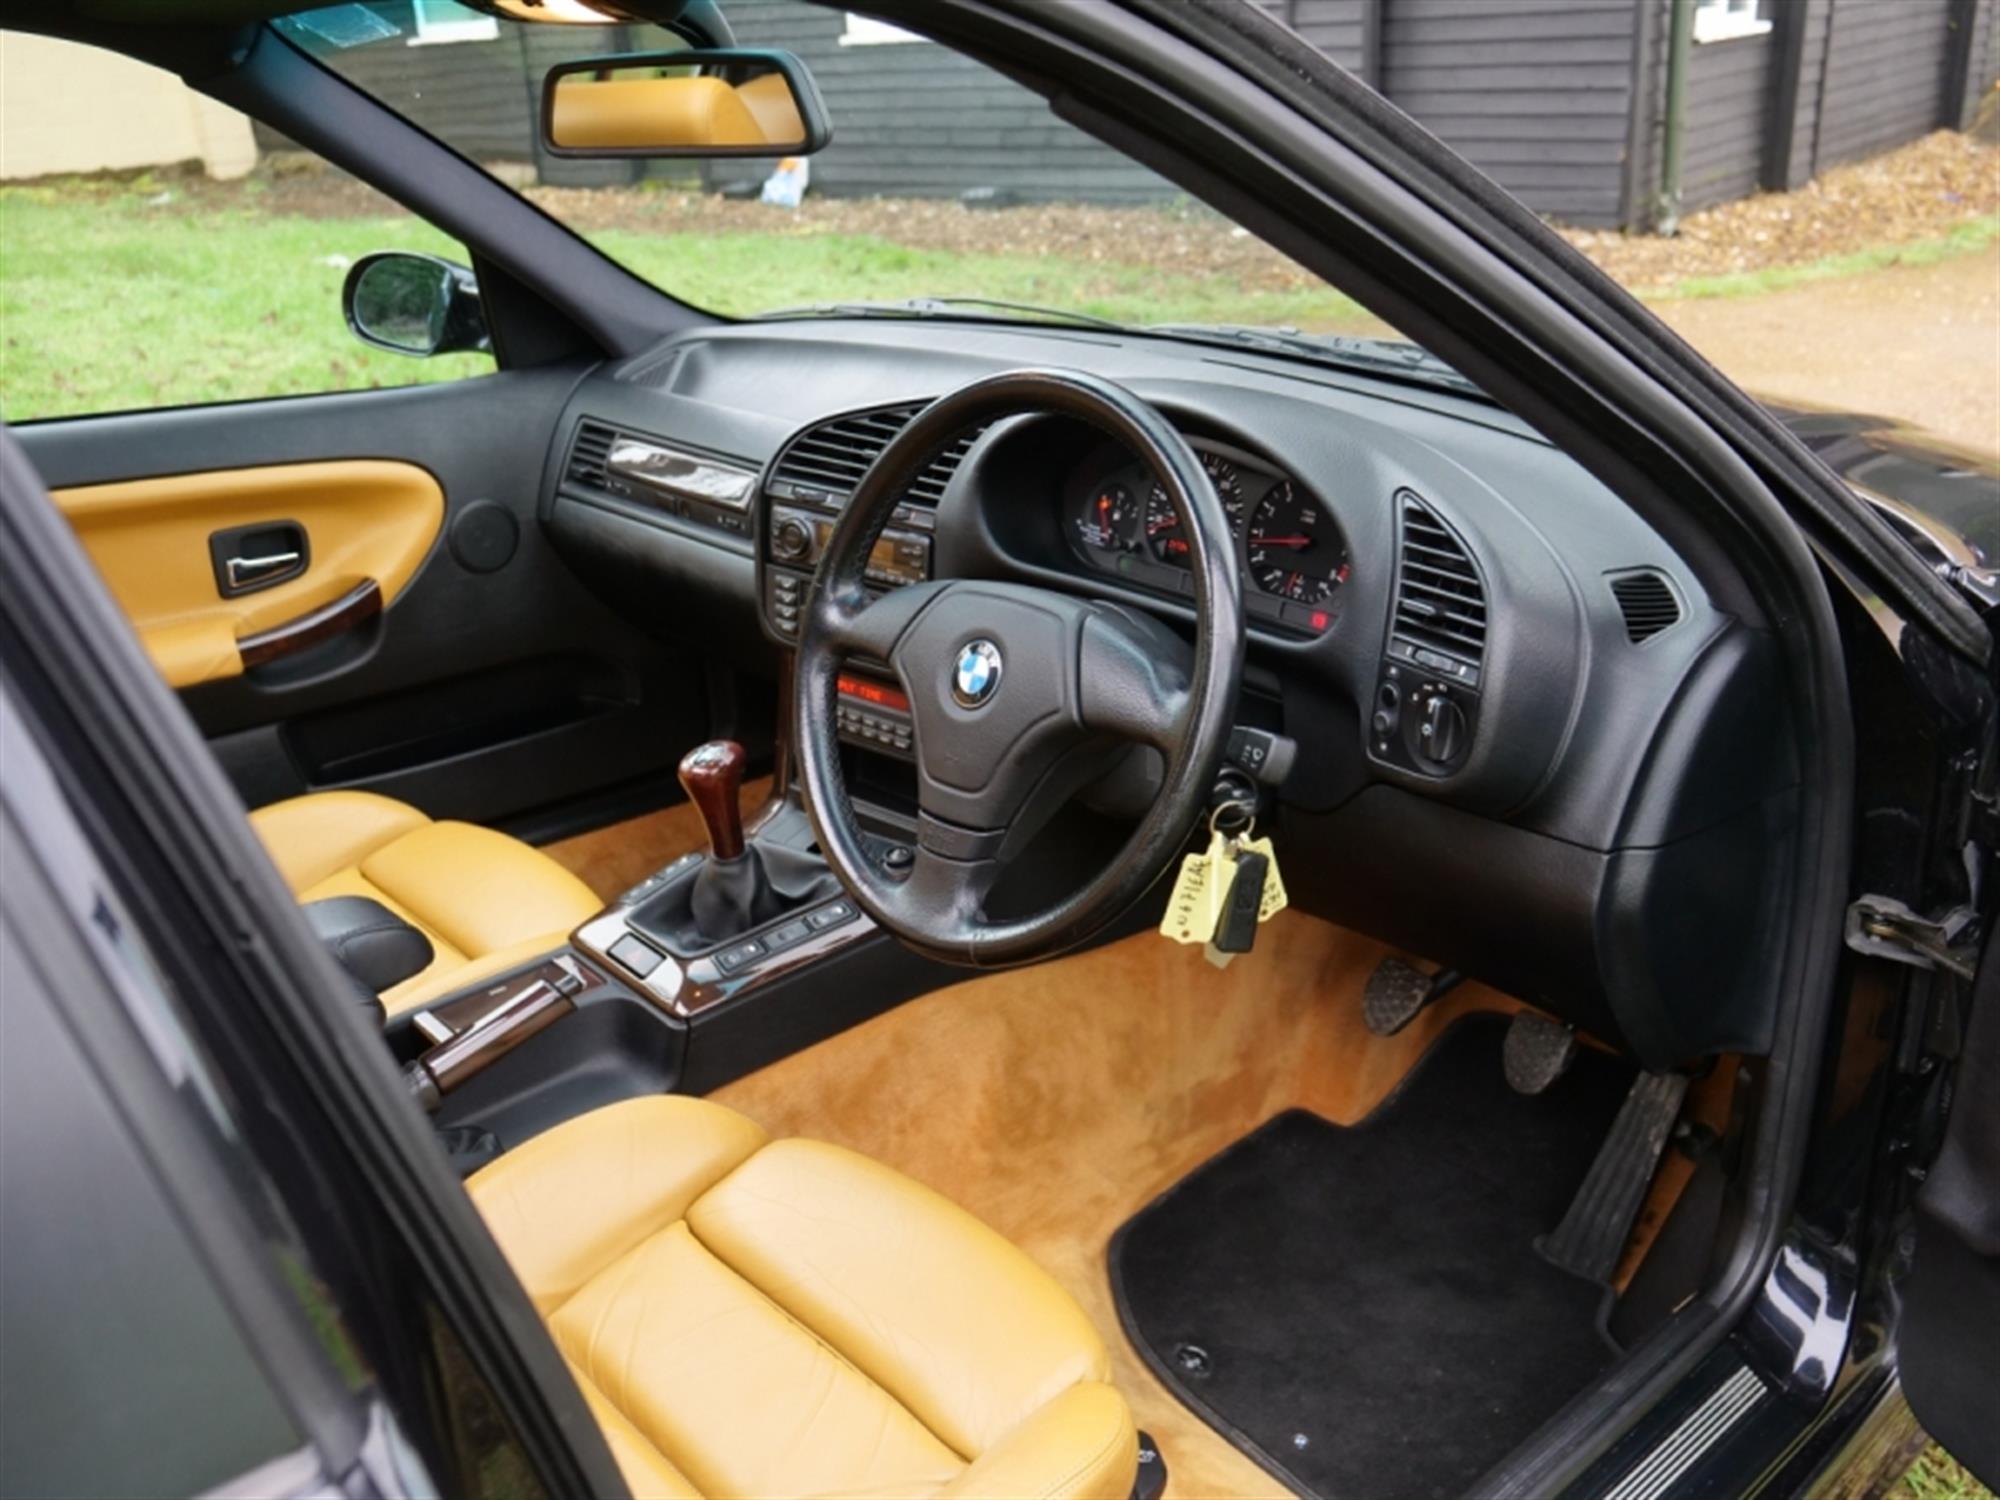 1996 BMW (E36) M3 Evolution - Image 5 of 10